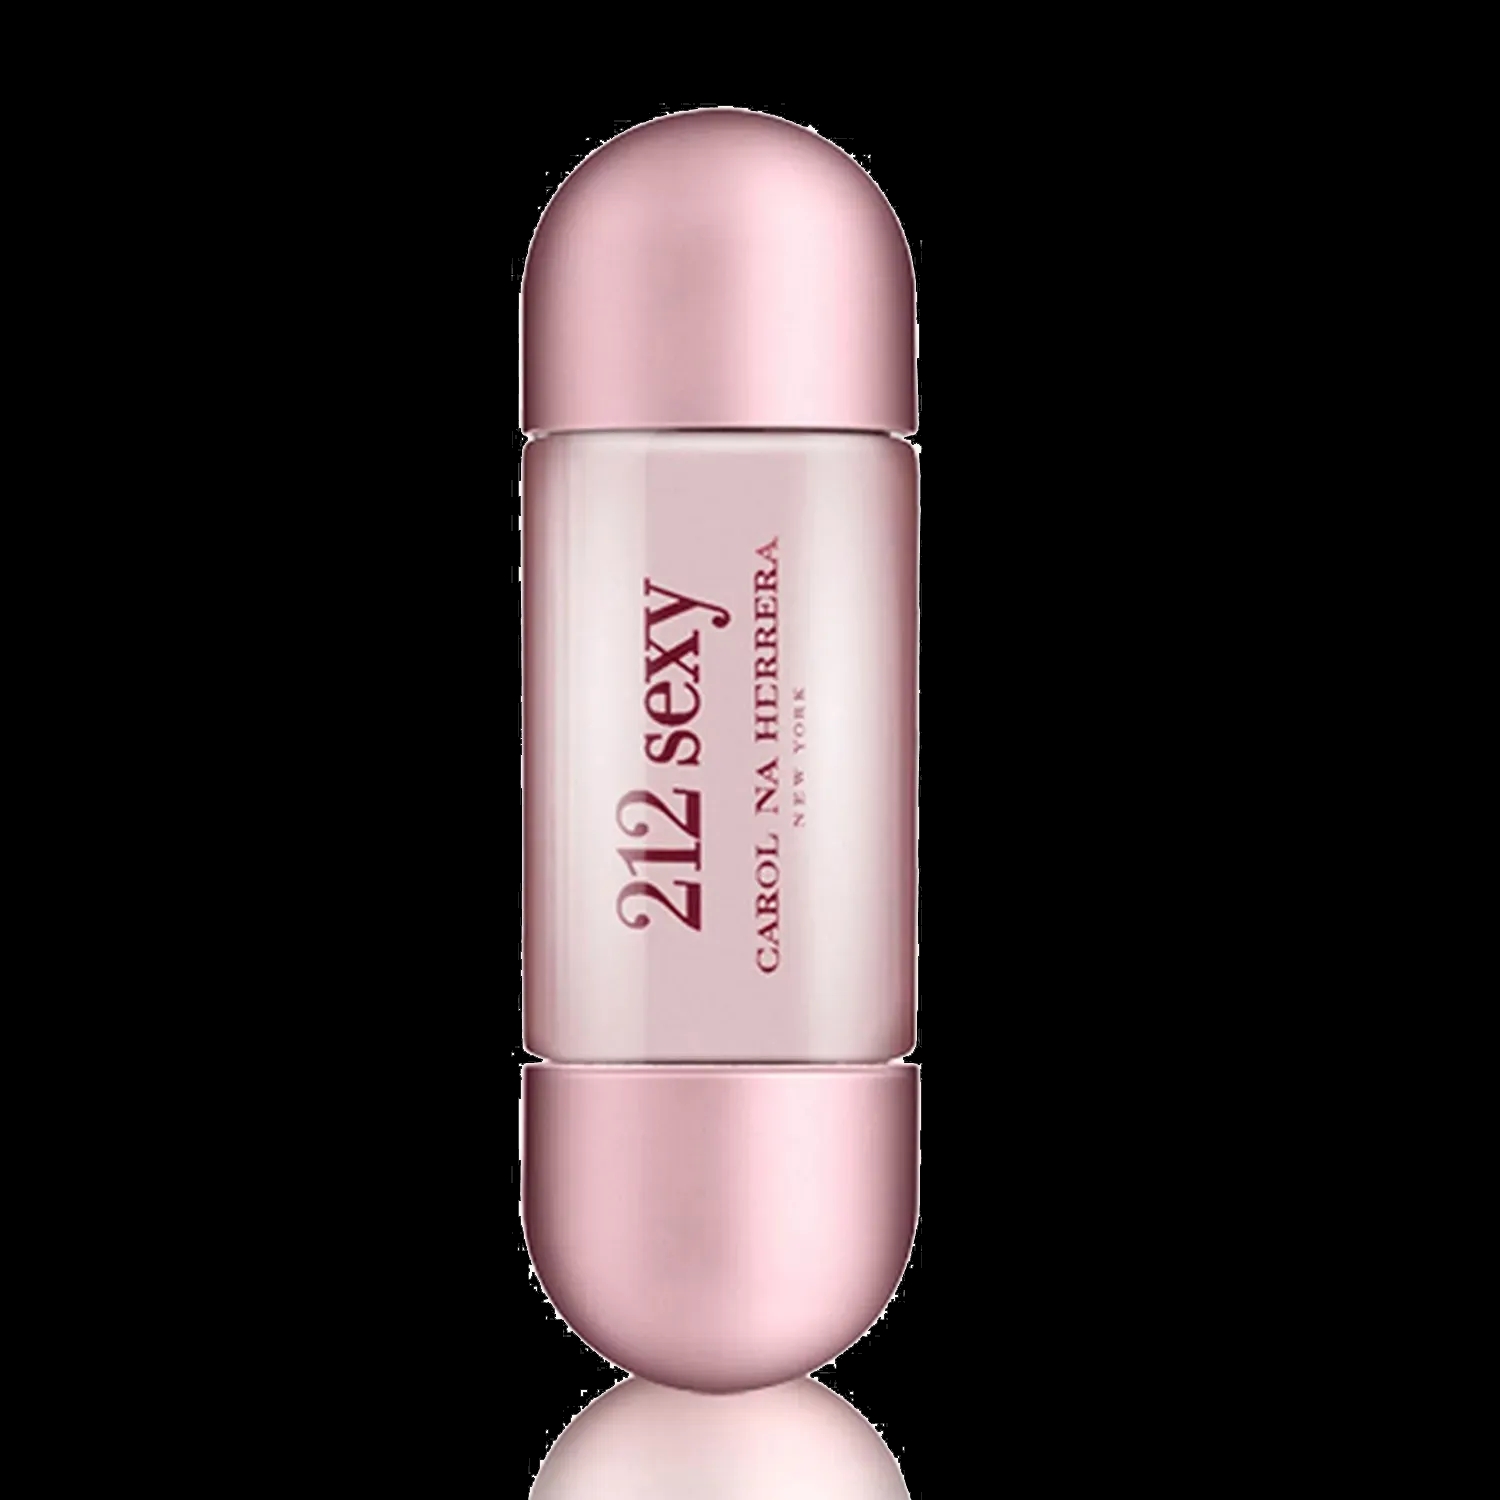 Buy Carolina Herrera Online India 212 (30ml) in De Sexy Parfum Eau at Price Best